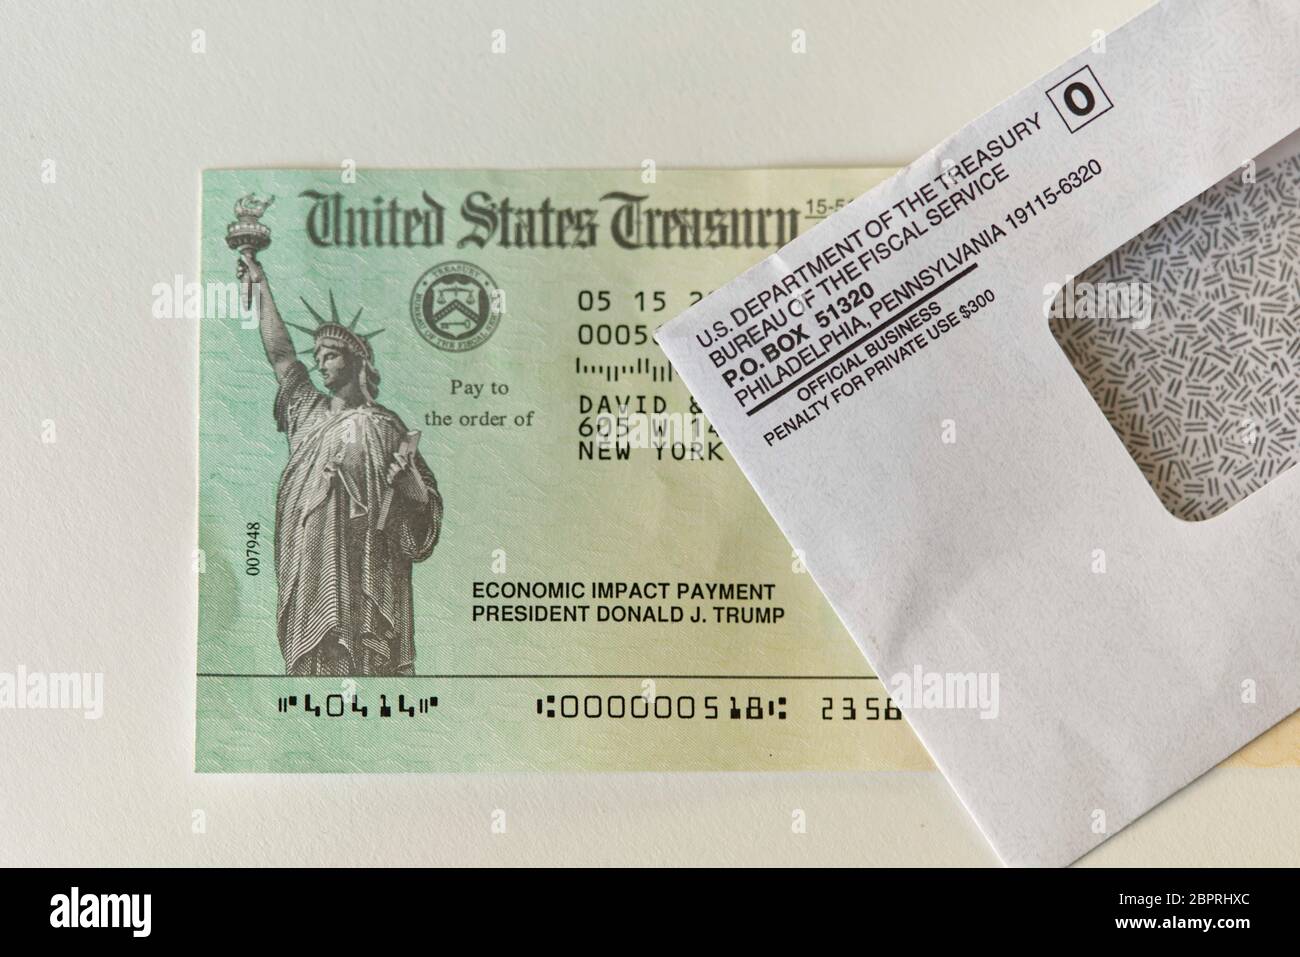 Vista di un controllo di pagamento di impatto economico e busta inviata dall'IRS alla maggior parte degli americani e residenti degli Stati Uniti per aiutare ad alleviare gli effetti del Covid-19 Foto Stock